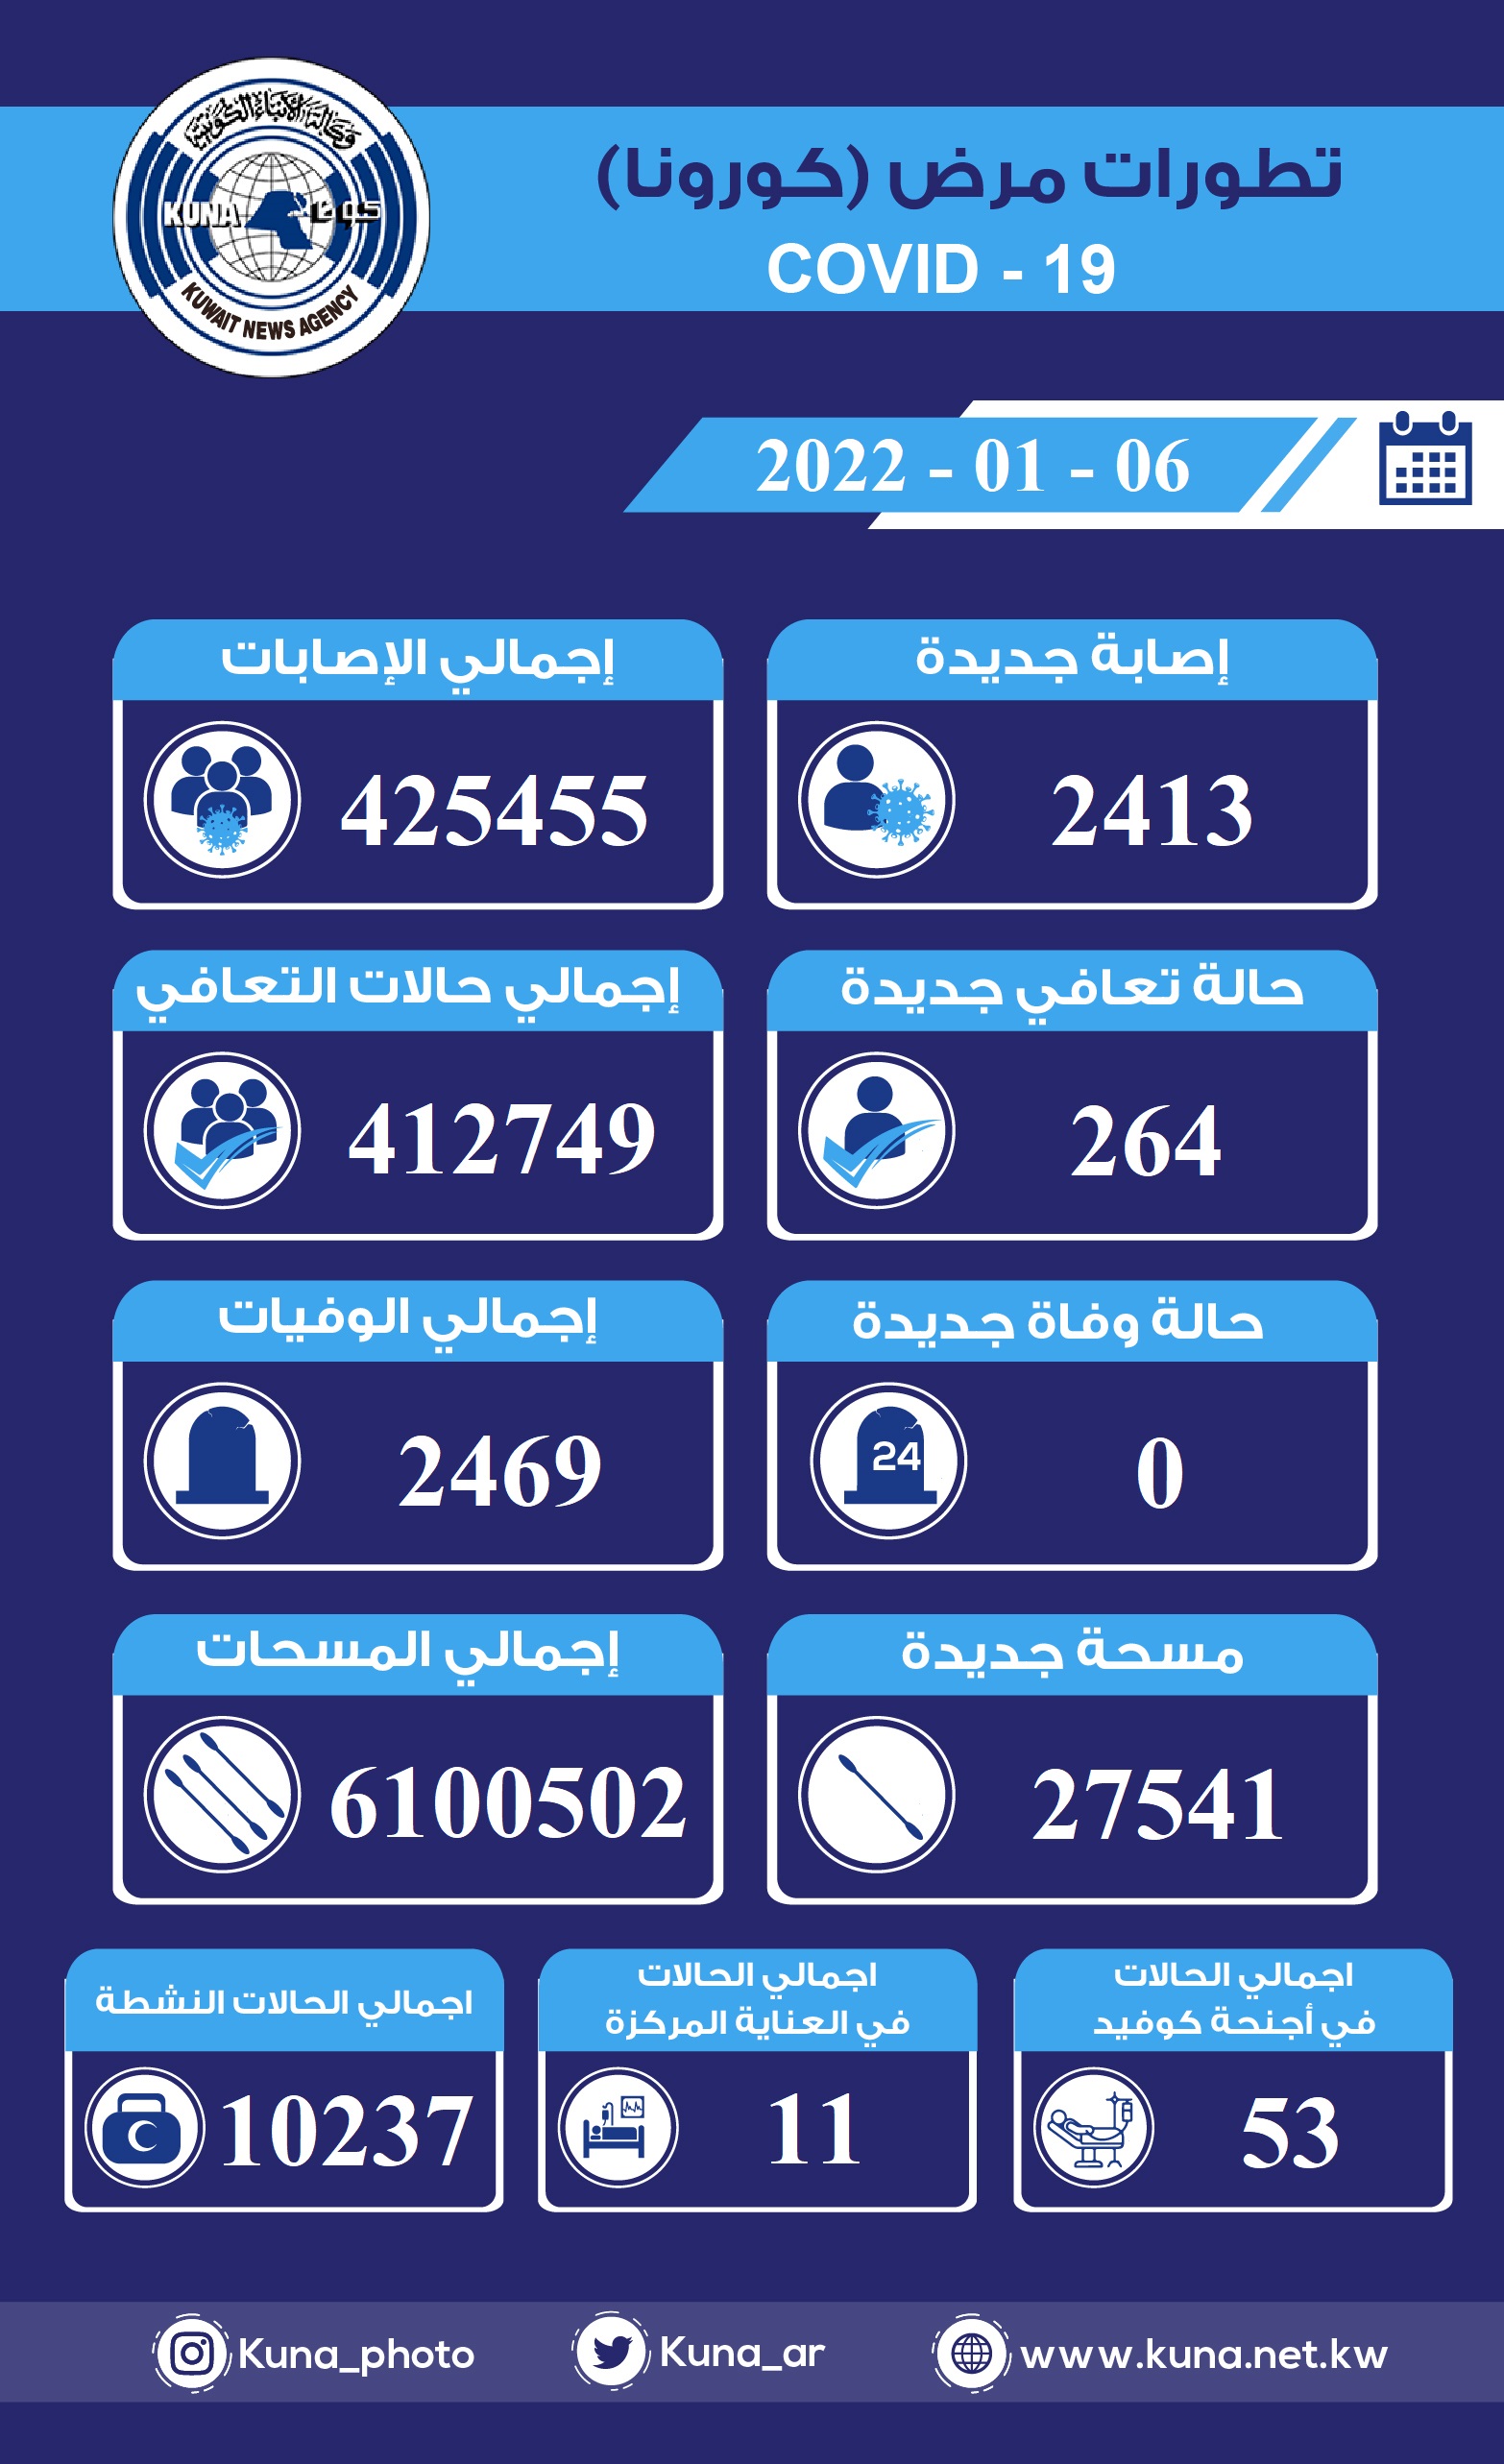 (الصحة) الكويتية: 2413 إصابة جديدة ب(كورونا) وشفاء 264 حالة.. ولا وفيات خلال الساعات ال24 الماضية